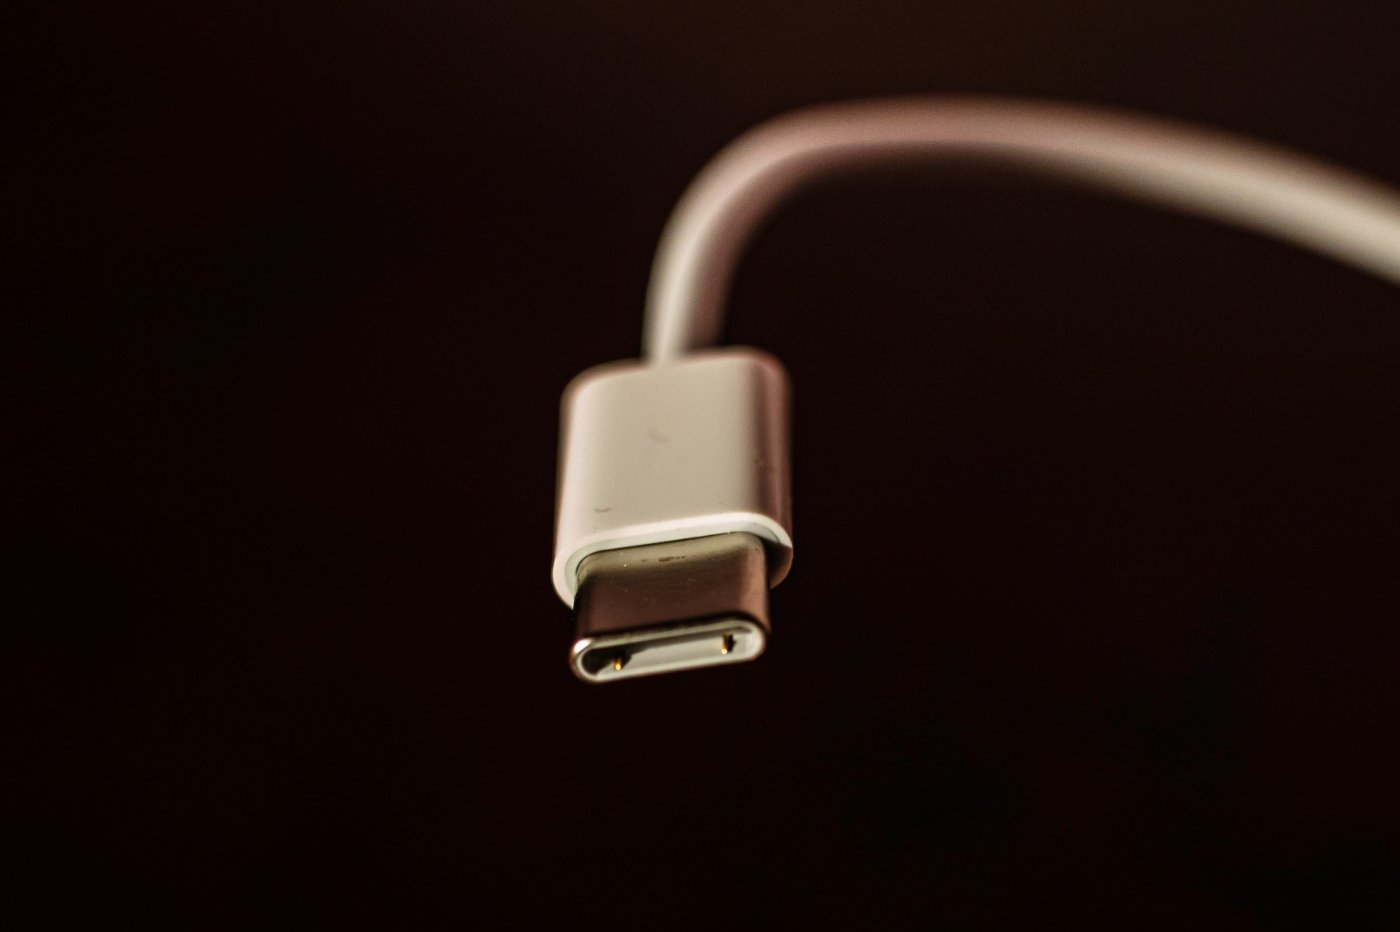 iPhone 15: sans surprise, Apple fait payer au prix cher l'USB-C pour ses  connectiques